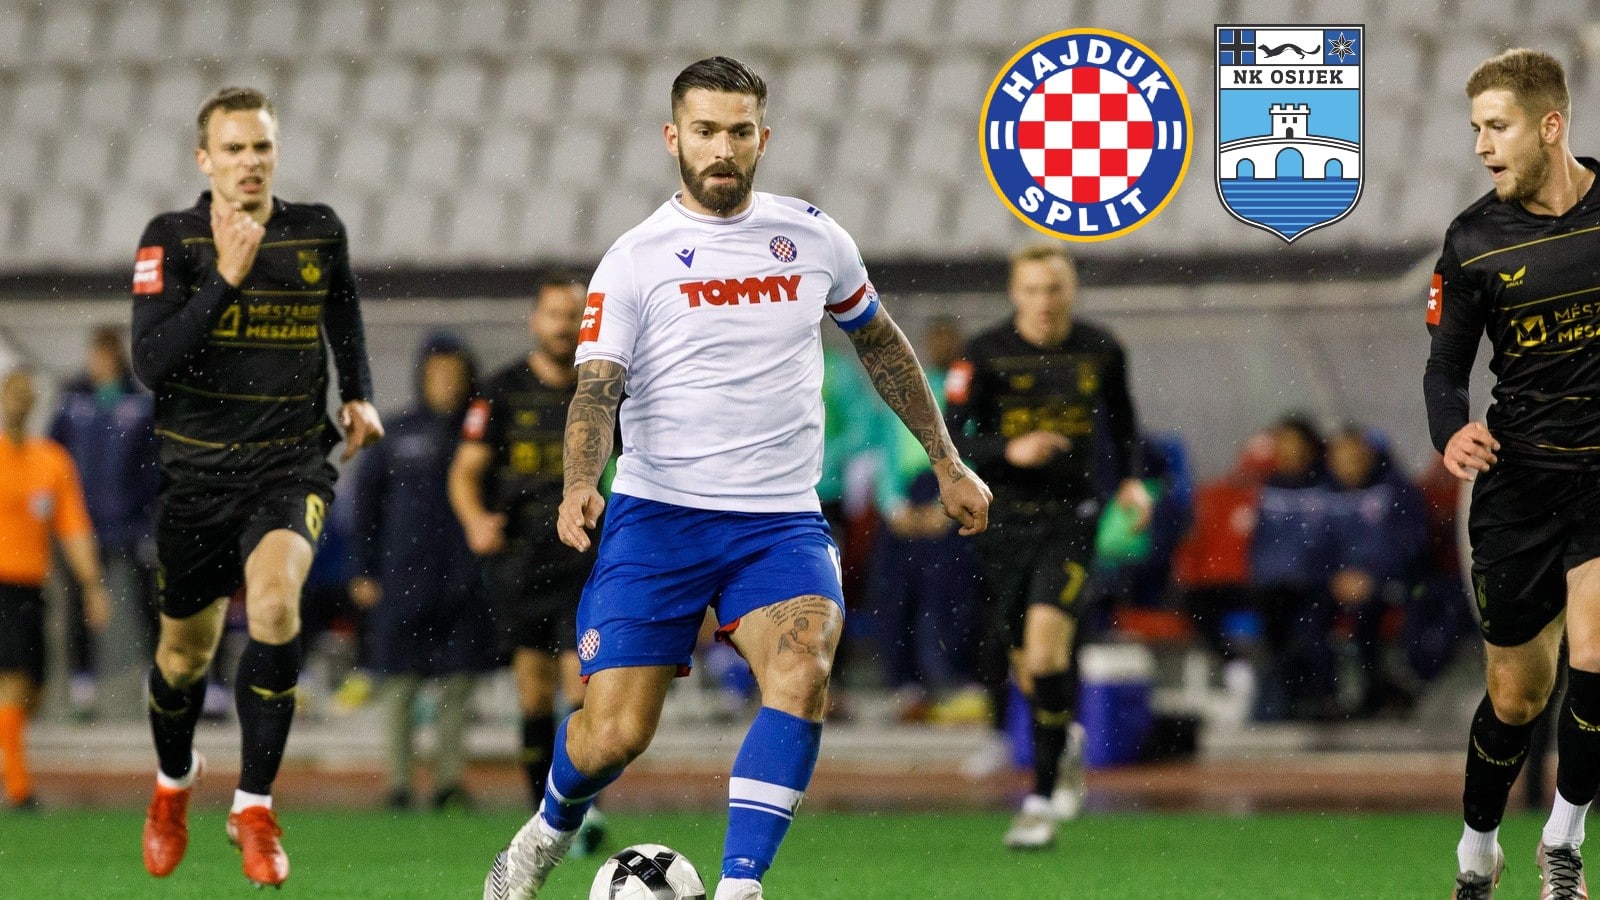 Split: Hajduk - Osijek 1:2 • HNK Hajduk Split